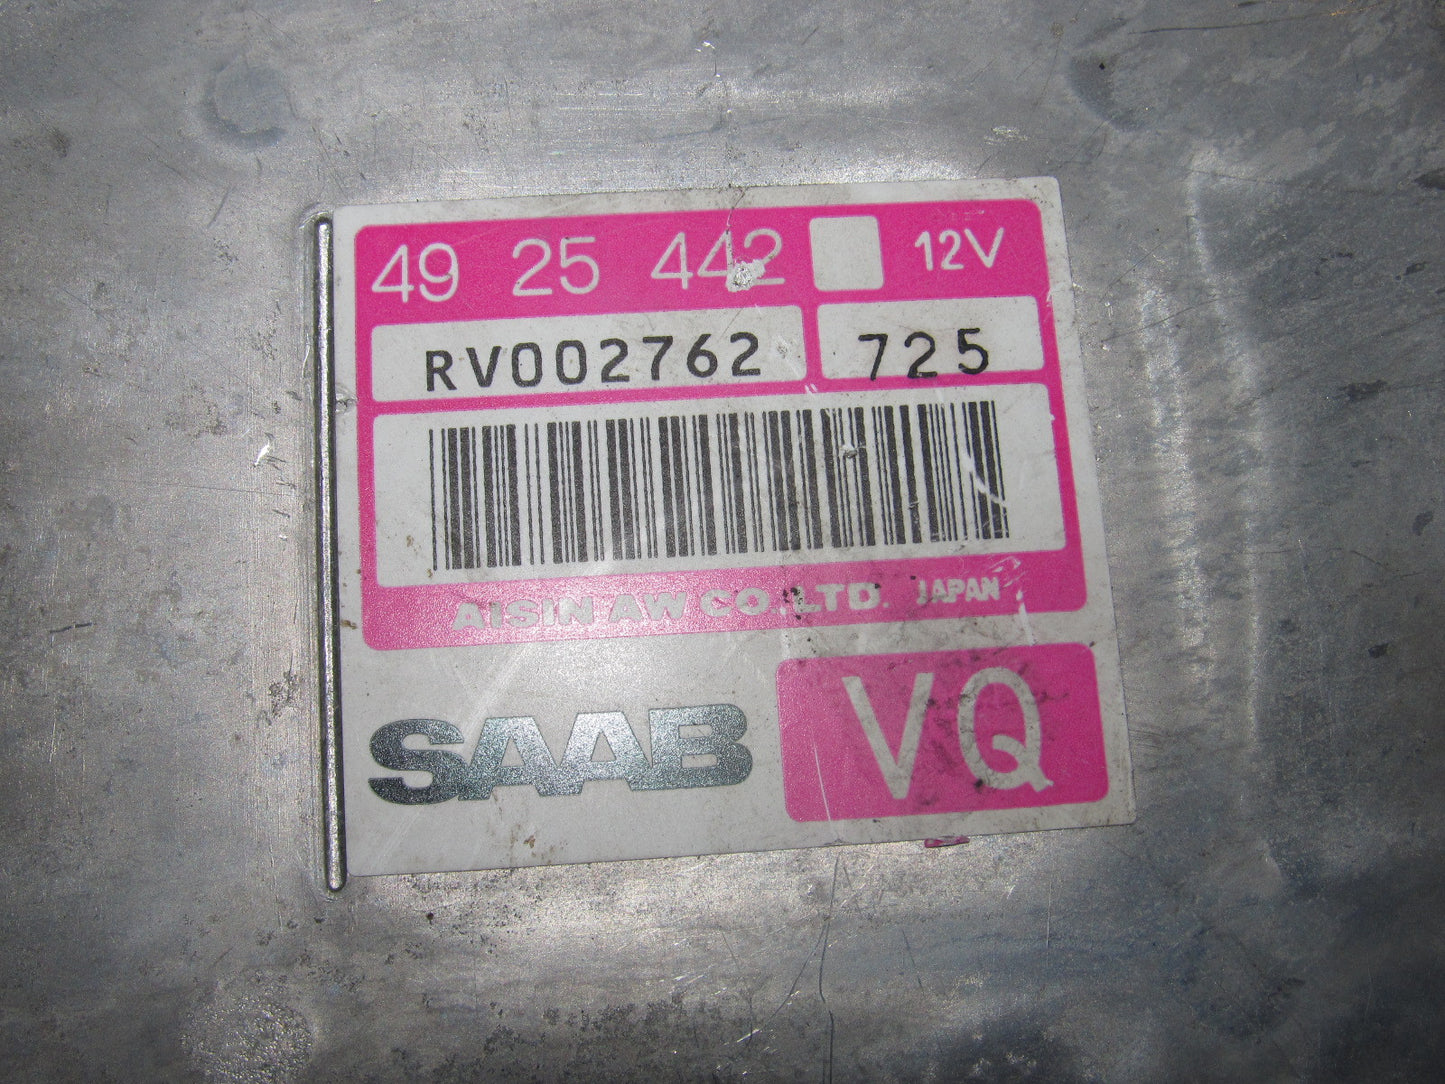 94 95 96 97 98 Saab 900 Turbo Transmission Computer 49 25 442